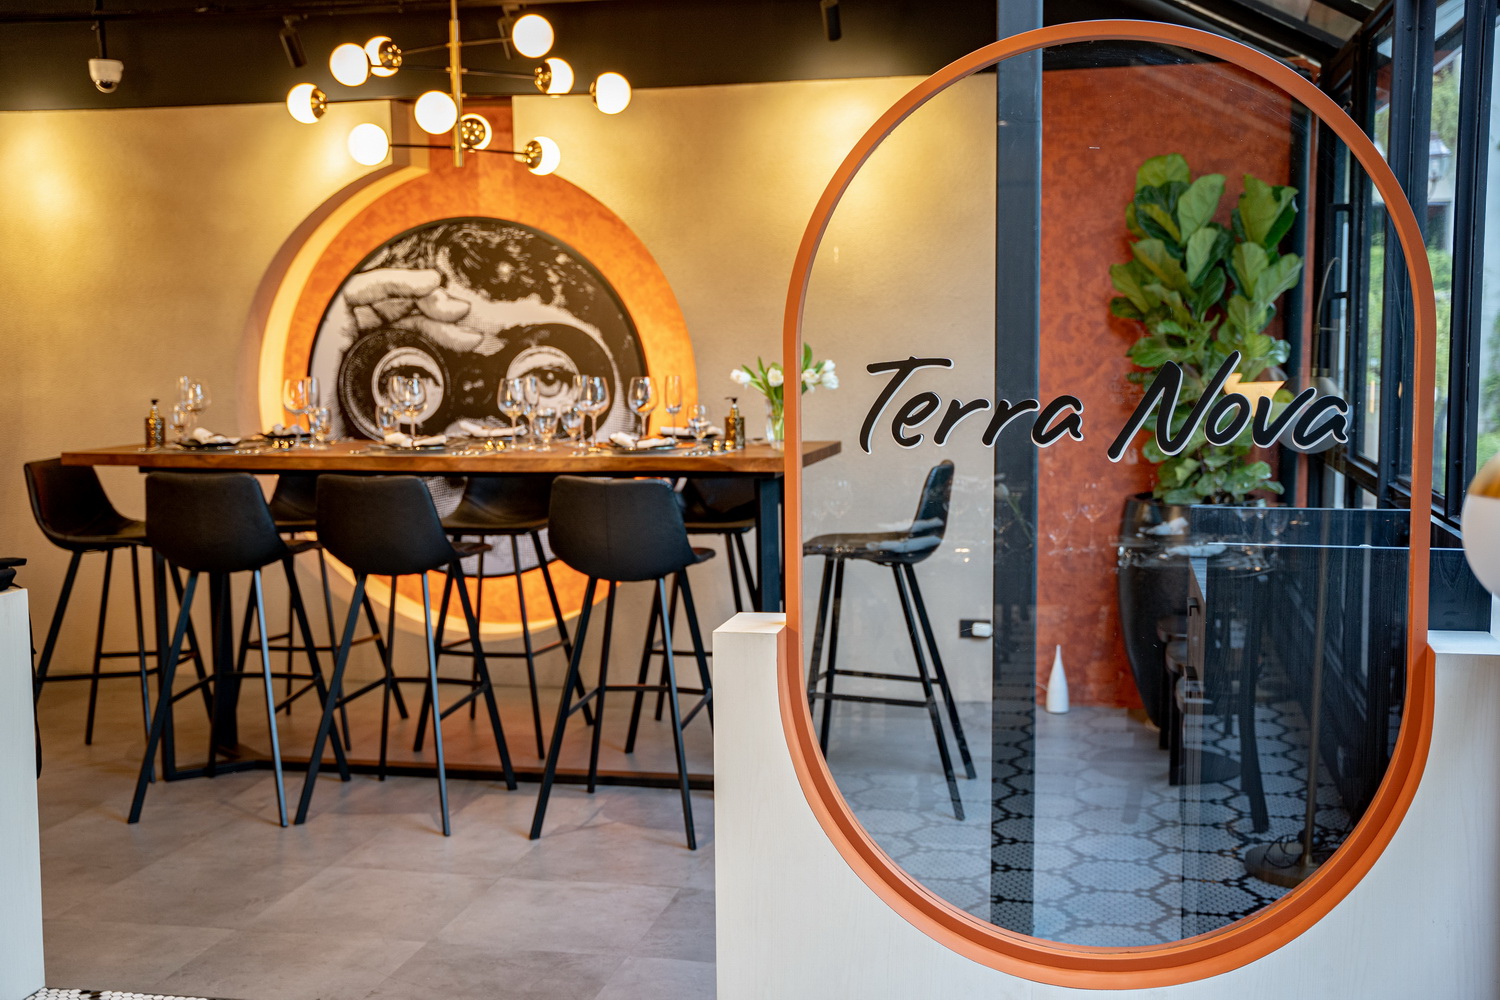 เปิดใหม่ “Terra Nova” ร้านอาหารอิตาลี เทรนดี้กระแสแรง ชูเมนูต้นตำรับผสานโมเดิร์นอิตาเลียนสไตล์ที่เดอะคริสตัล เลียบทางด่วน